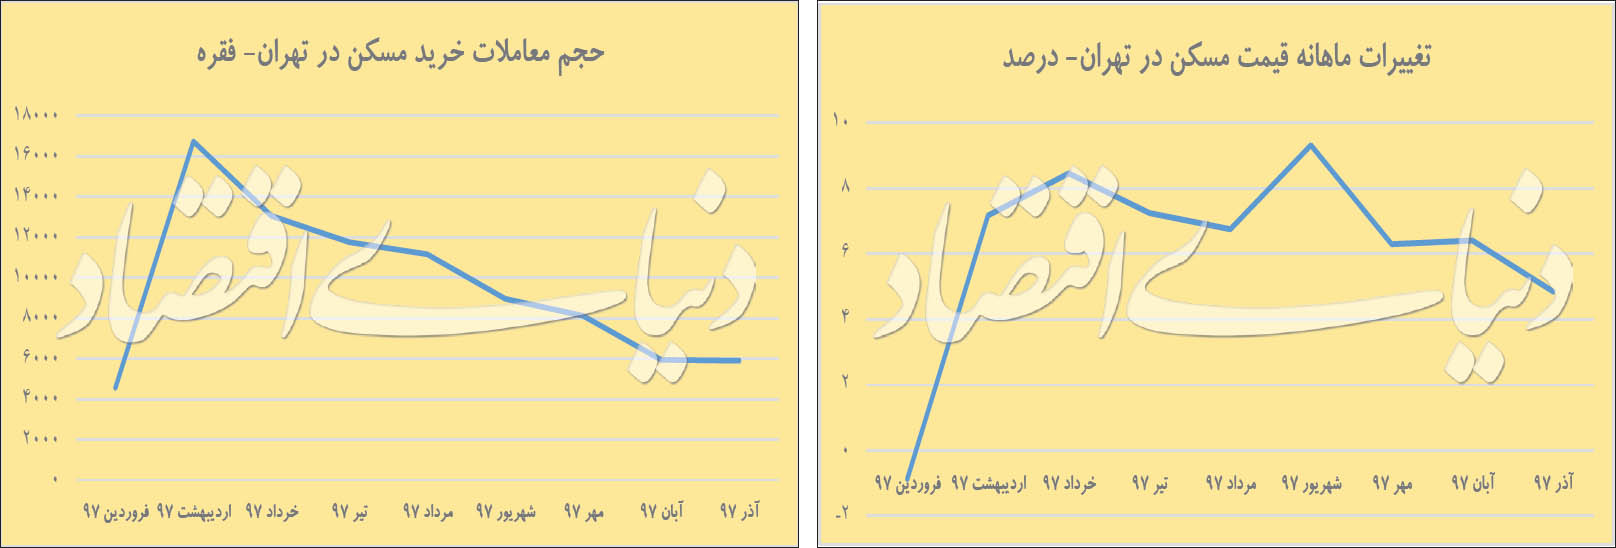 نمودار تغییرات قیمت و تعداد معاملات در شهر تهران